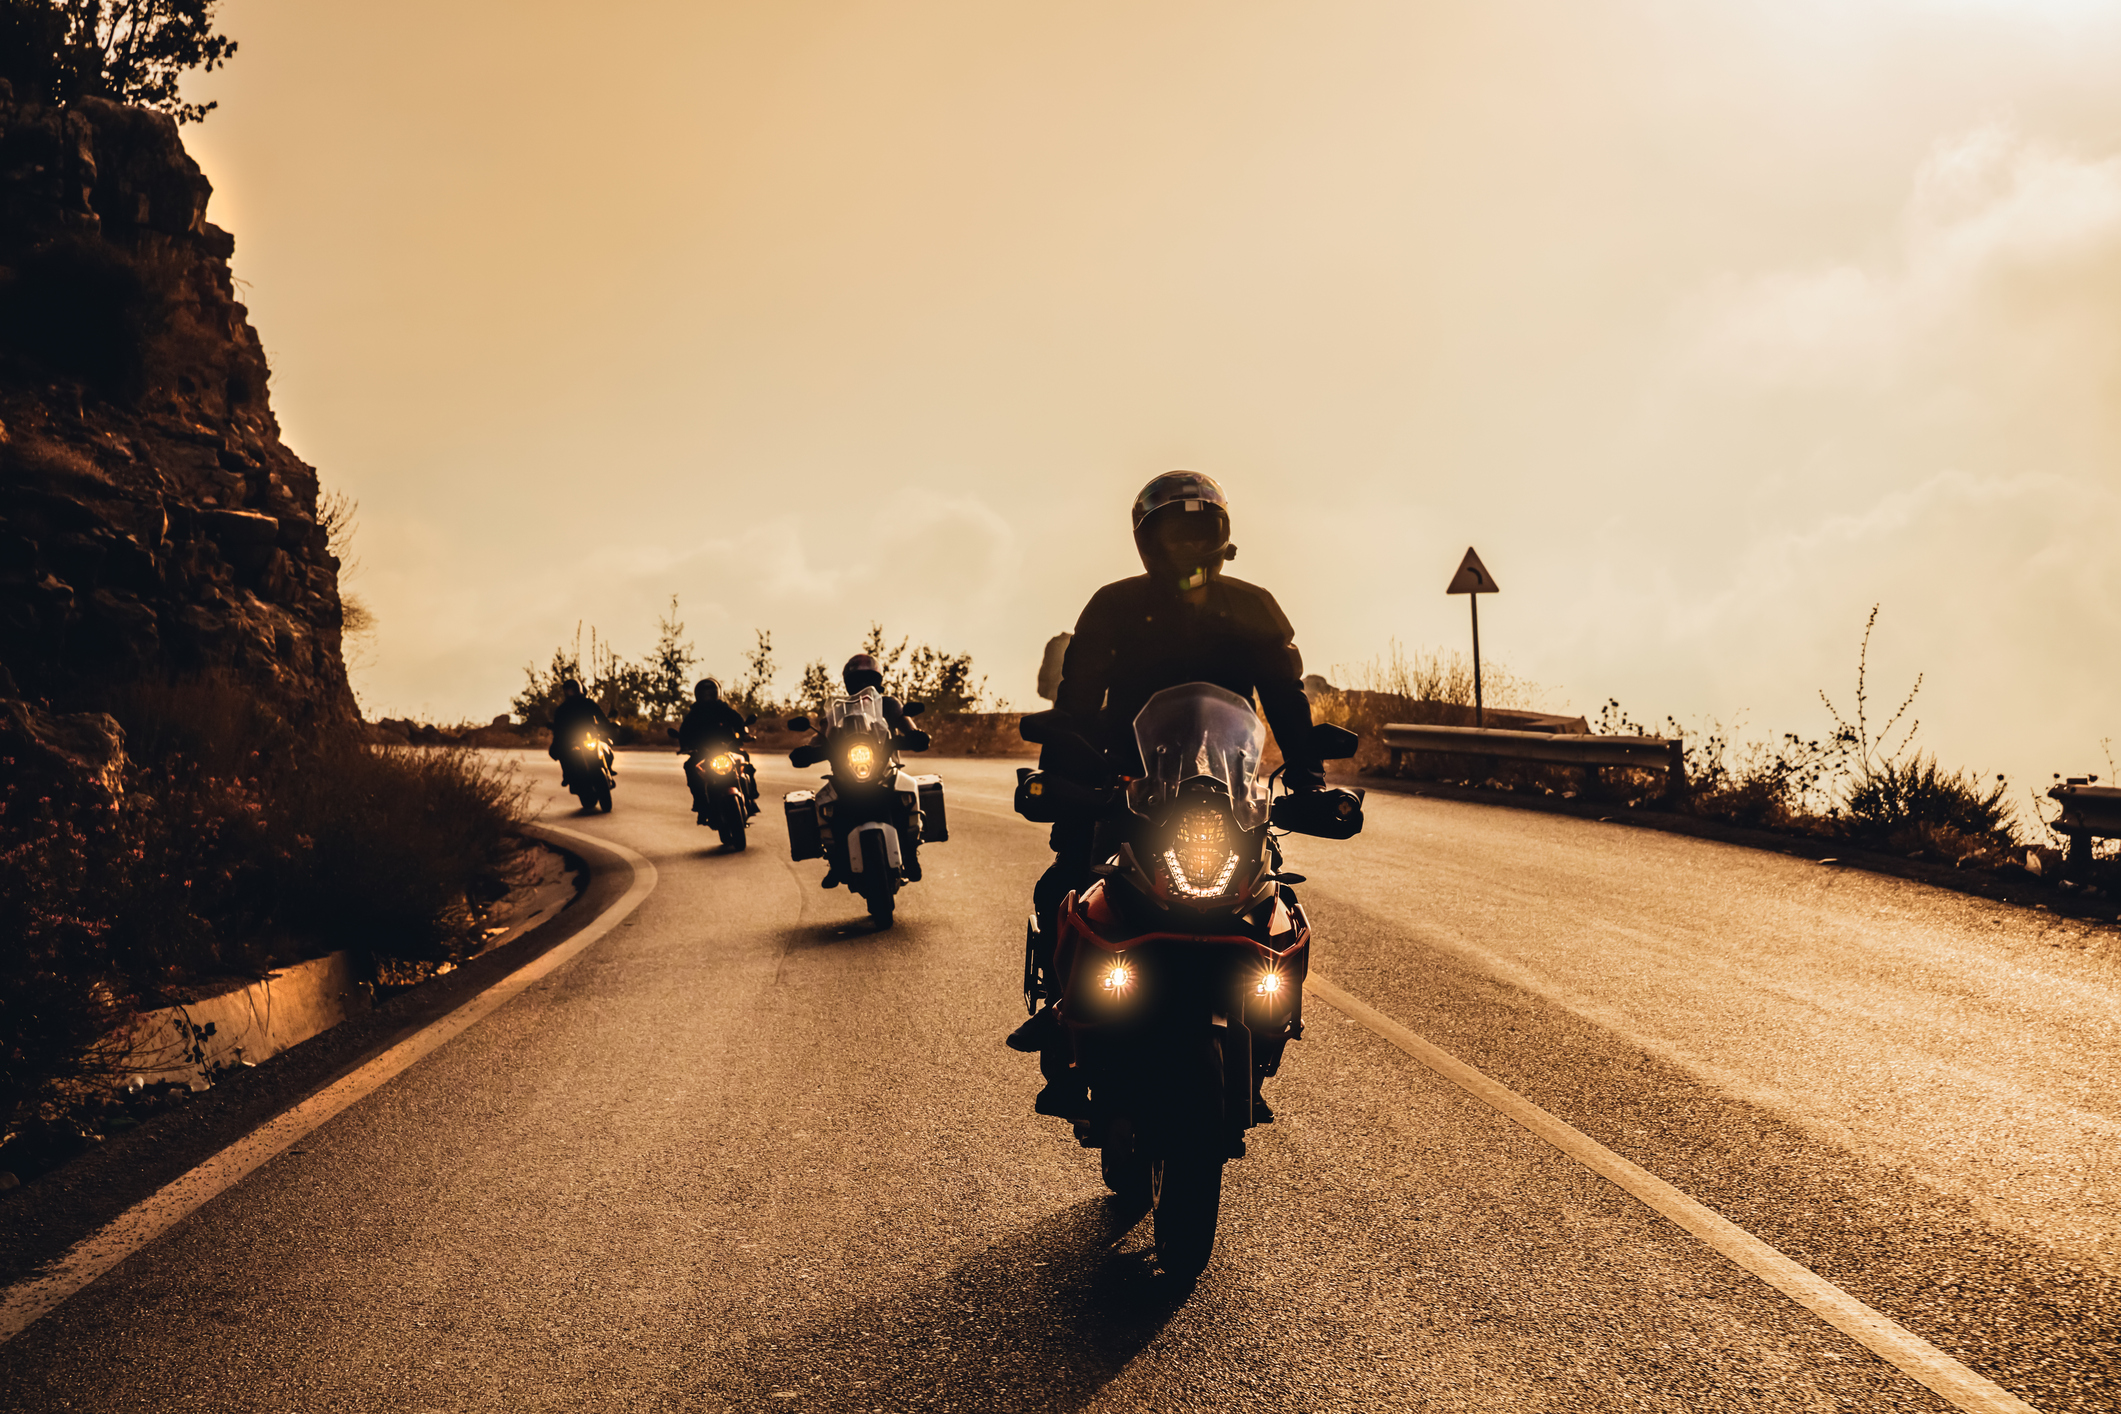 Une photo sépia de quatre motocyclistes qui se suivent de manière sécuritaire, un après l’autre, dans une courbe.